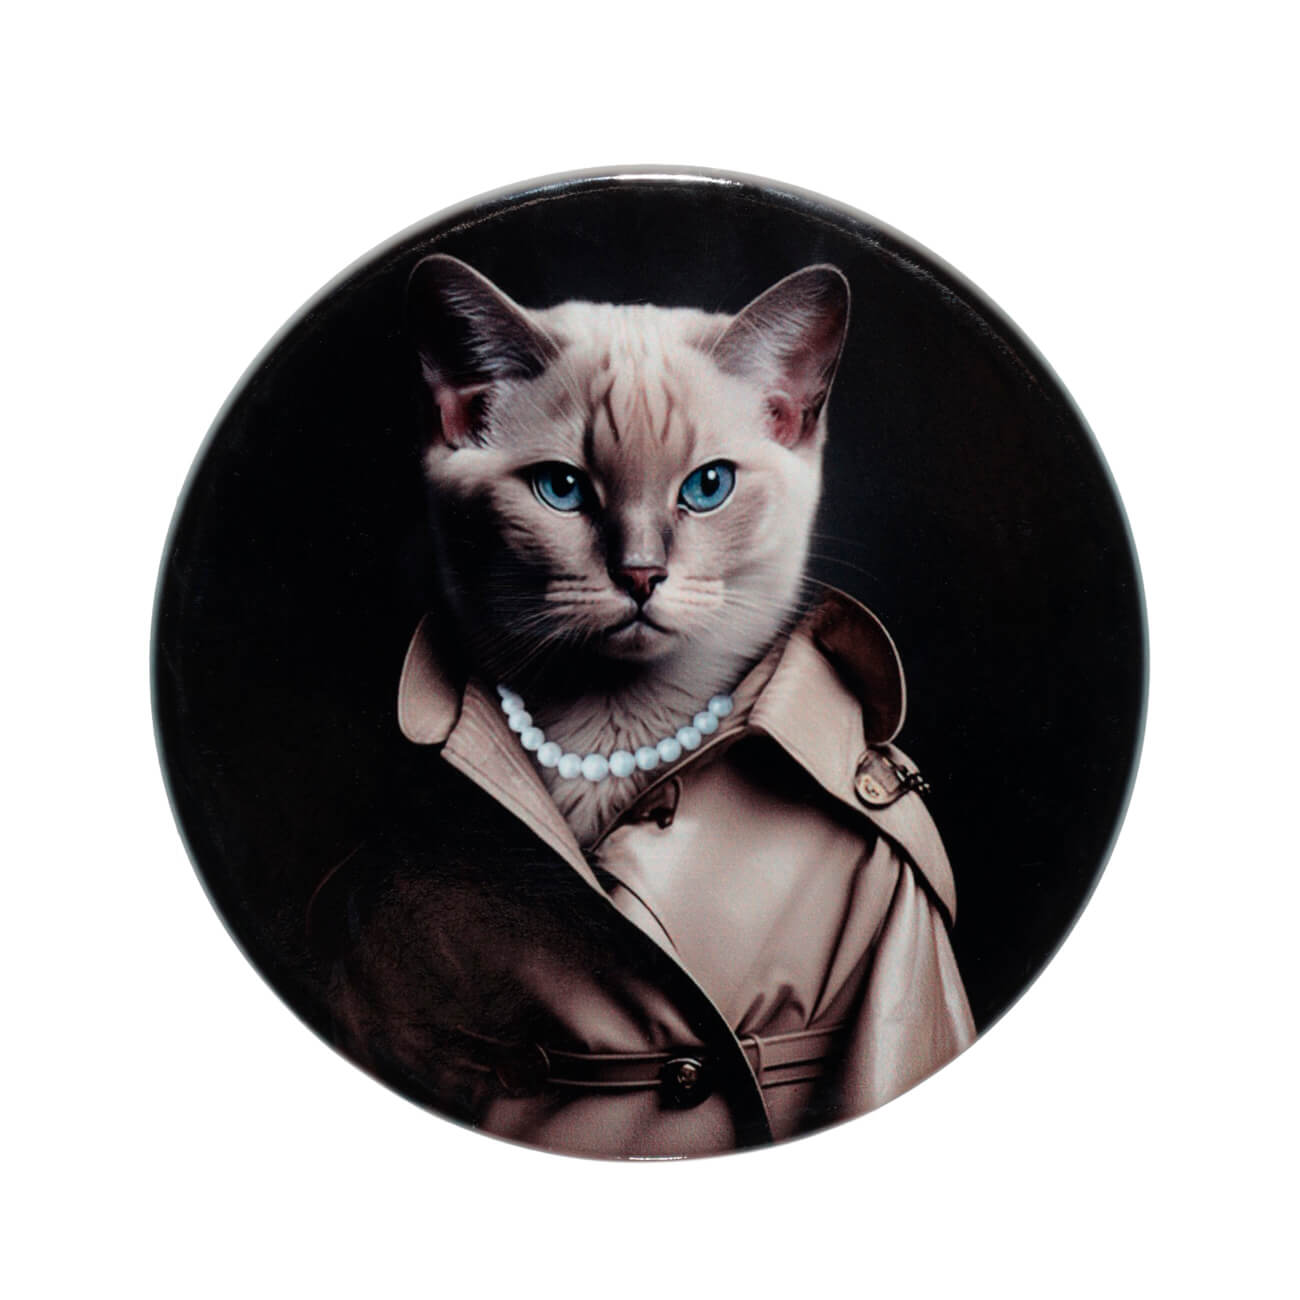 Подставка под кружку, 11 см, керамика/пробка, круглая, Кошка в пальто, On style изображение № 1